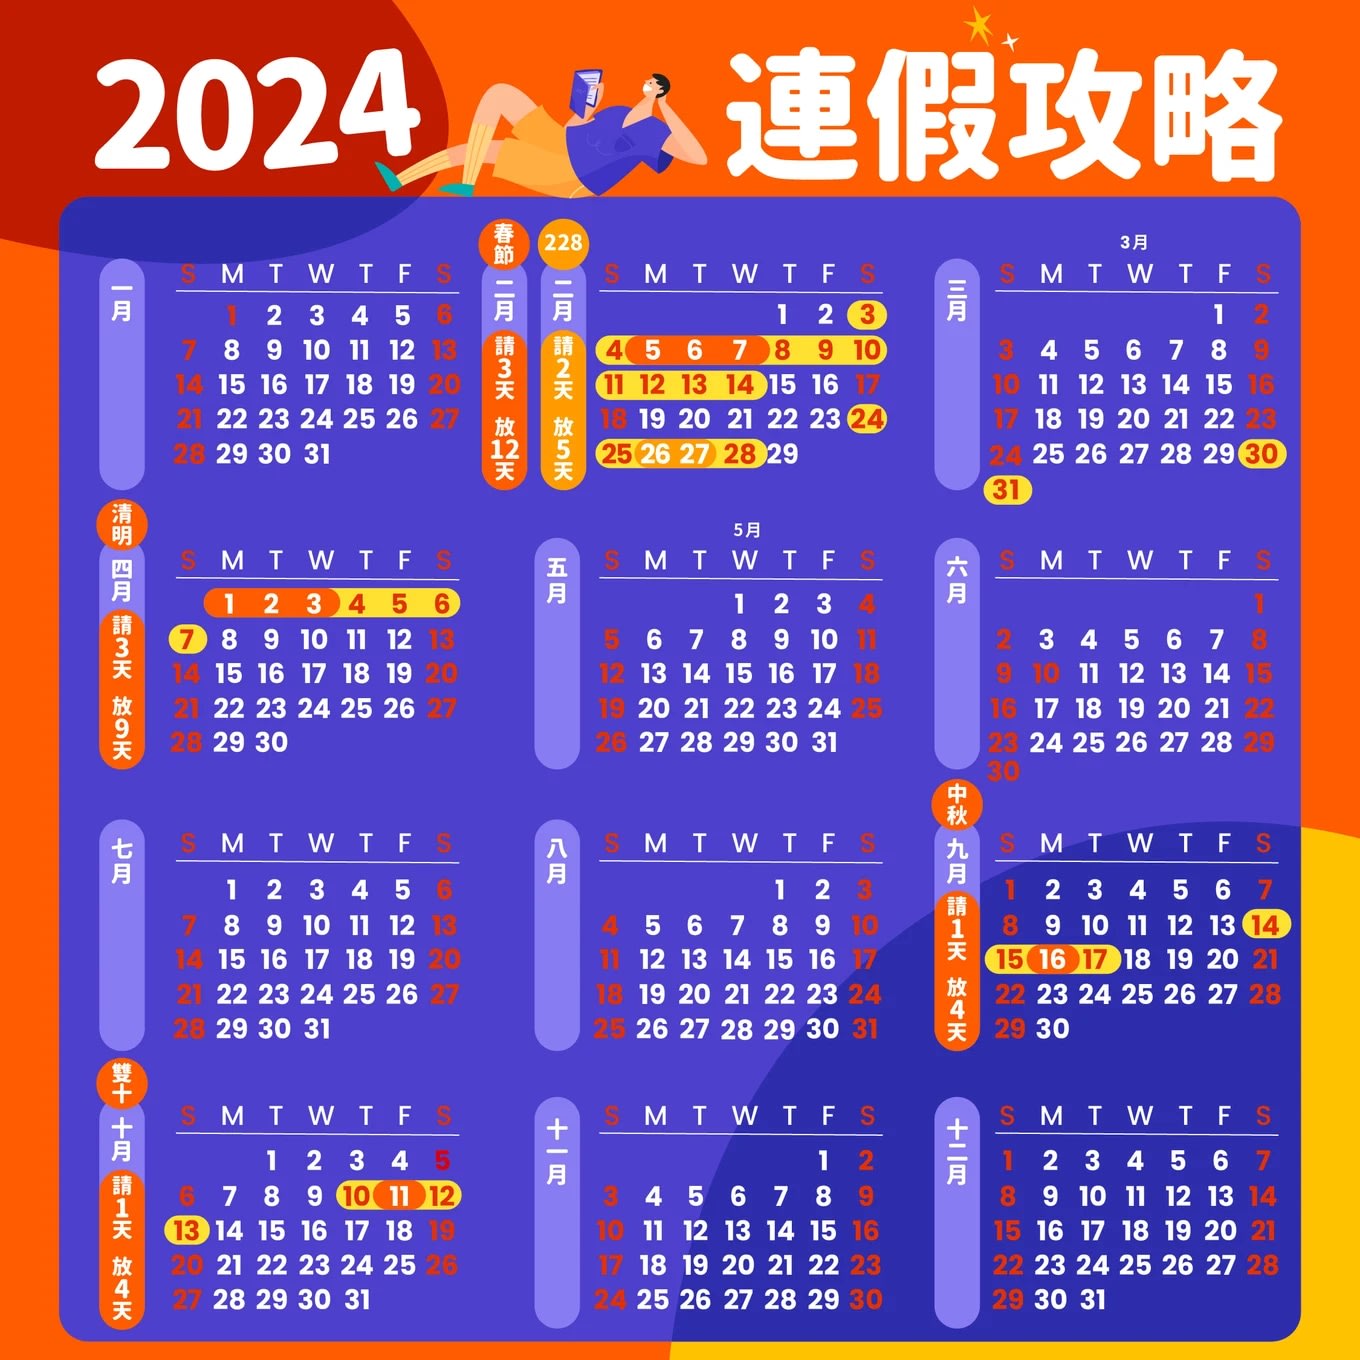 2025行事曆